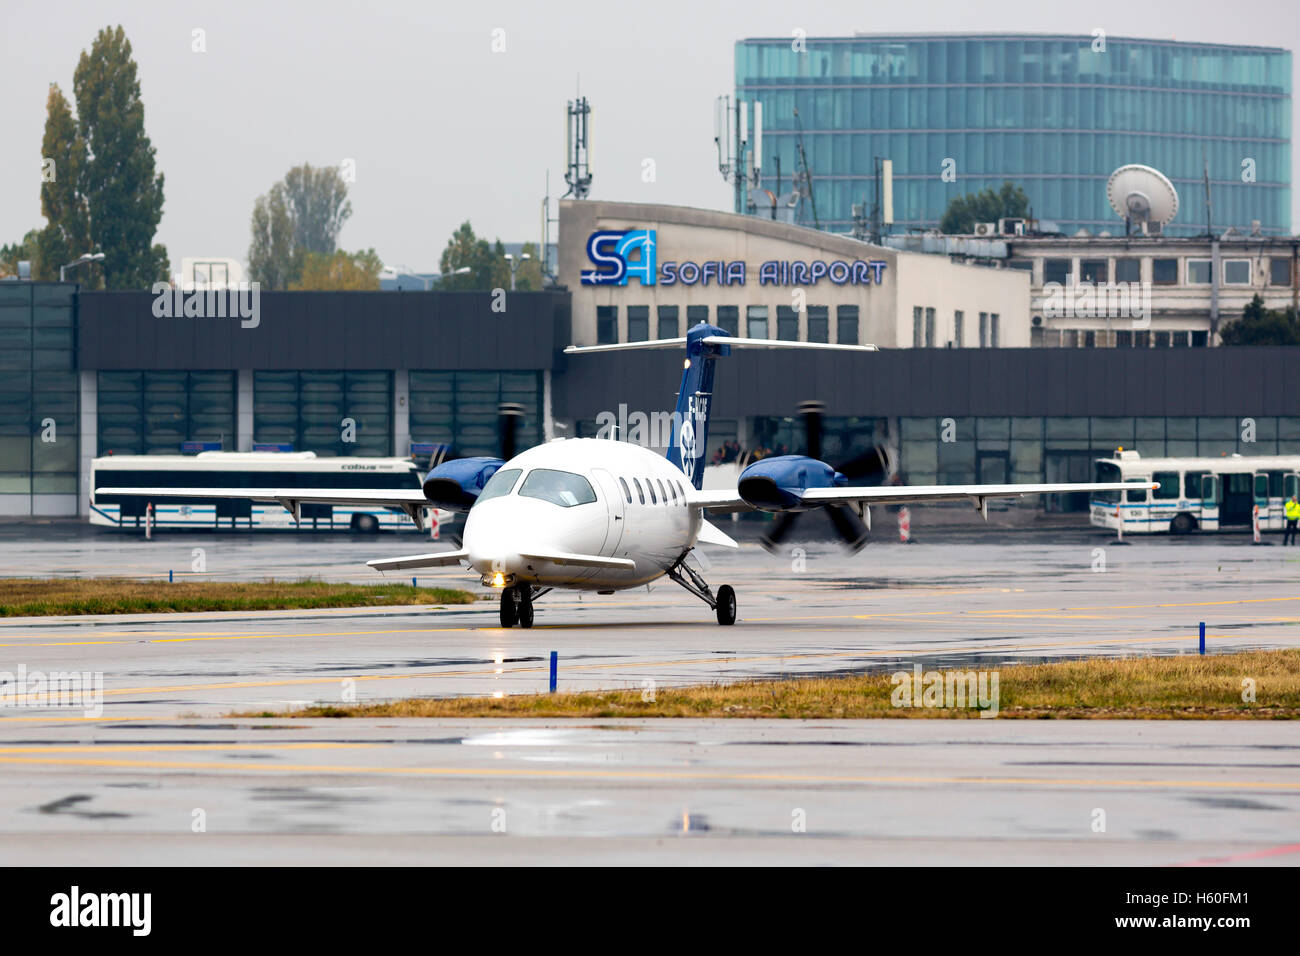 Sofia, Bulgarien - 16. Oktober 2016: Eine kleine private Propeller Flugzeug Sekunden vor dem Flug zu den Start-und Landebahn am Flughafen Sofia. Stockfoto